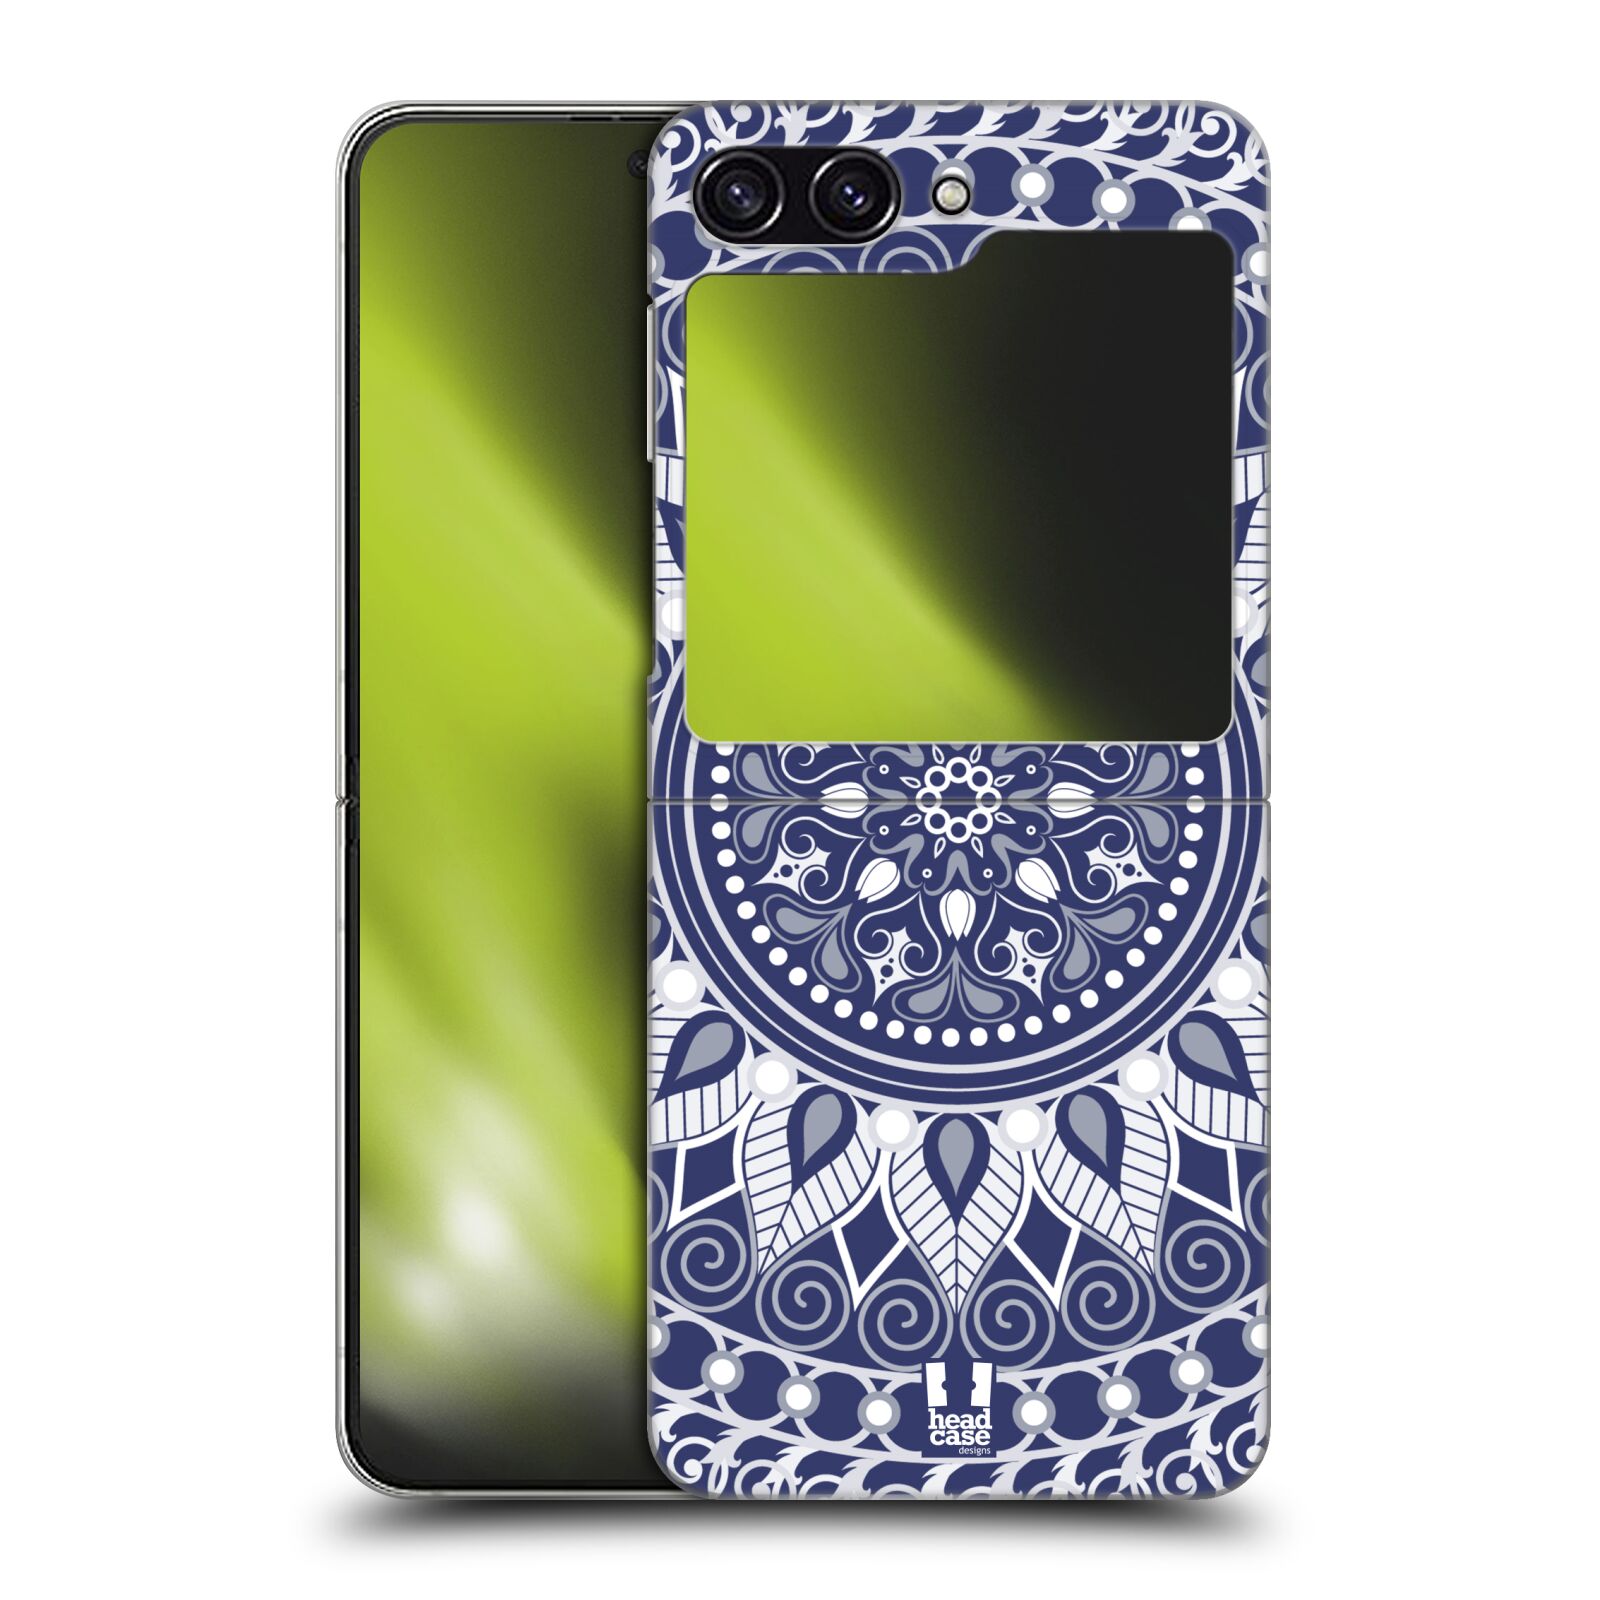 Plastový obal HEAD CASE na mobil Samsung Galaxy Z Flip 5 vzor Indie Mandala slunce barevný motiv MODRÁ